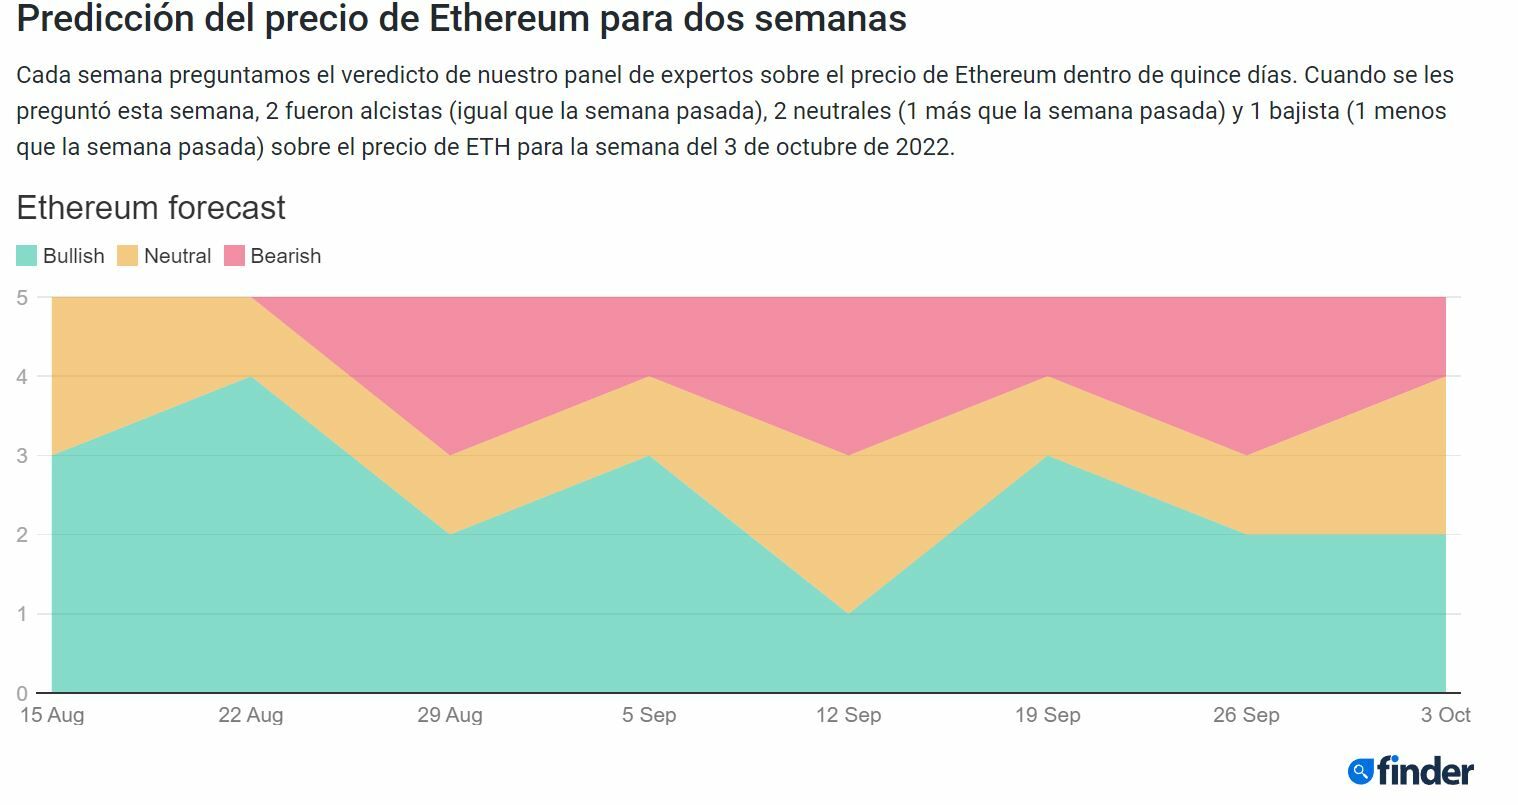 Predicciones semanales de Finder sobre Ethereum